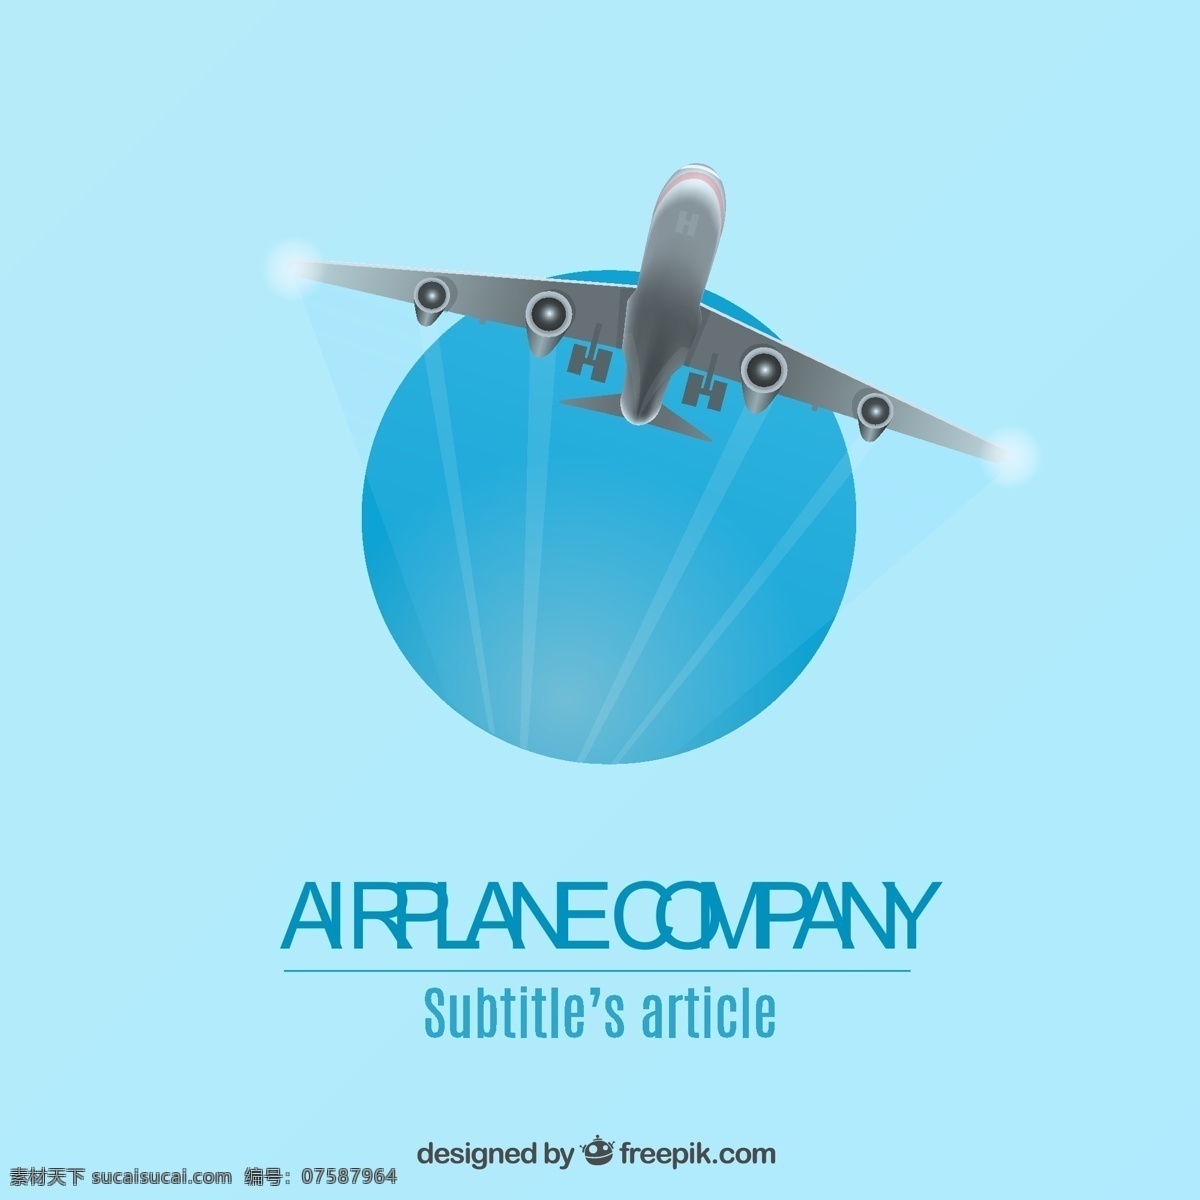 航空公司标志 标识 传单 图标 模板 飞机 公司 航空公司 飞行模板 徽章 飞行 公司标志 标志模板 青色 天蓝色